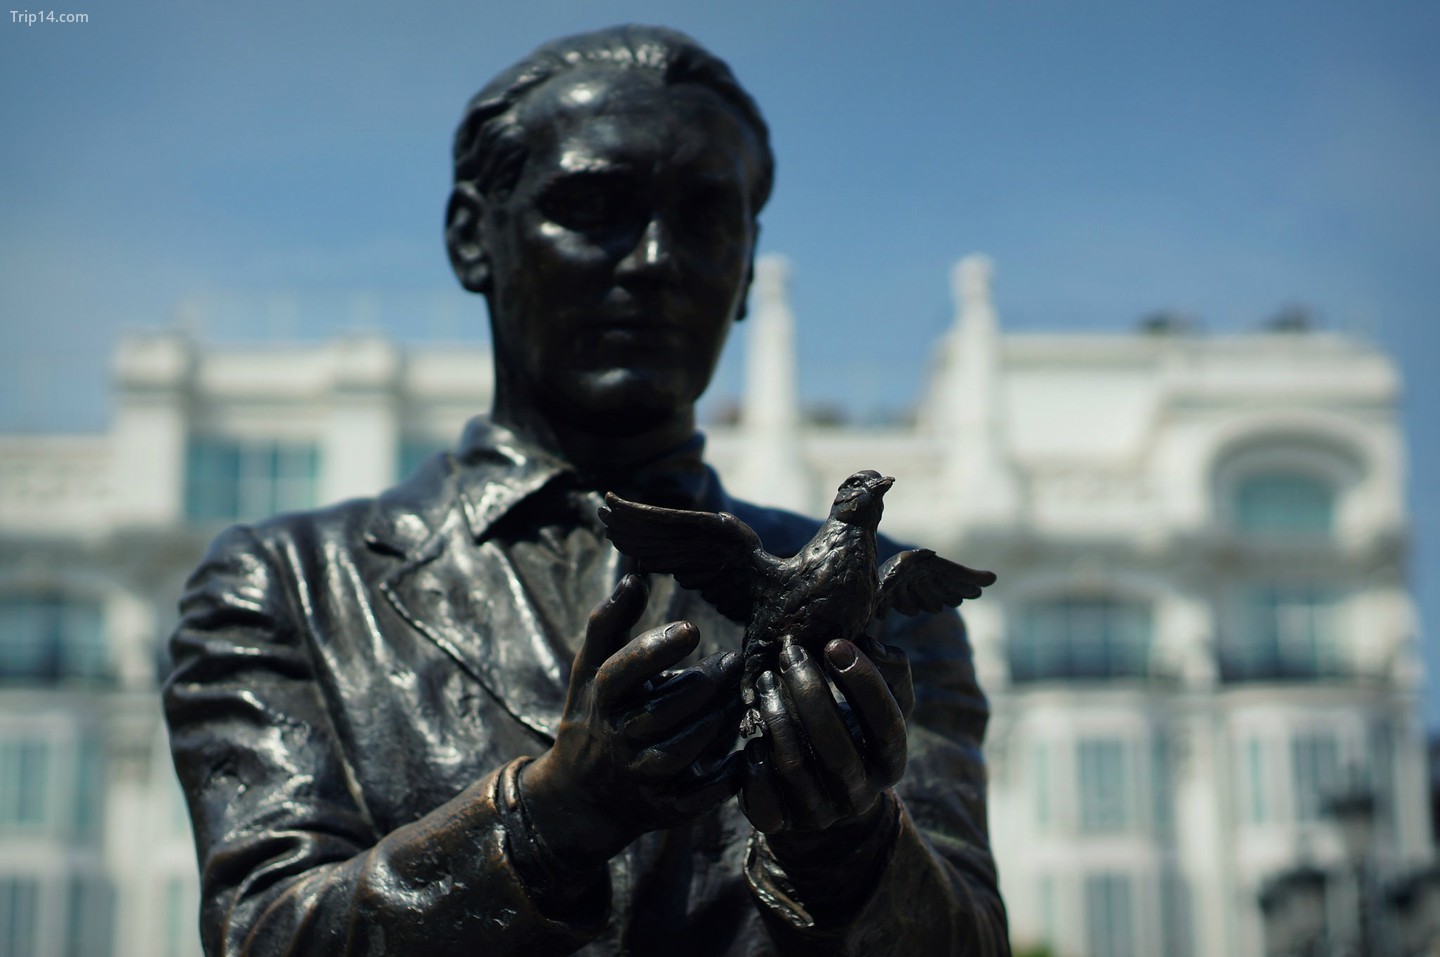  Bức tượng của nhà thơ Tây Ban Nha Federico Garcia Lorca ở Madrid   |   